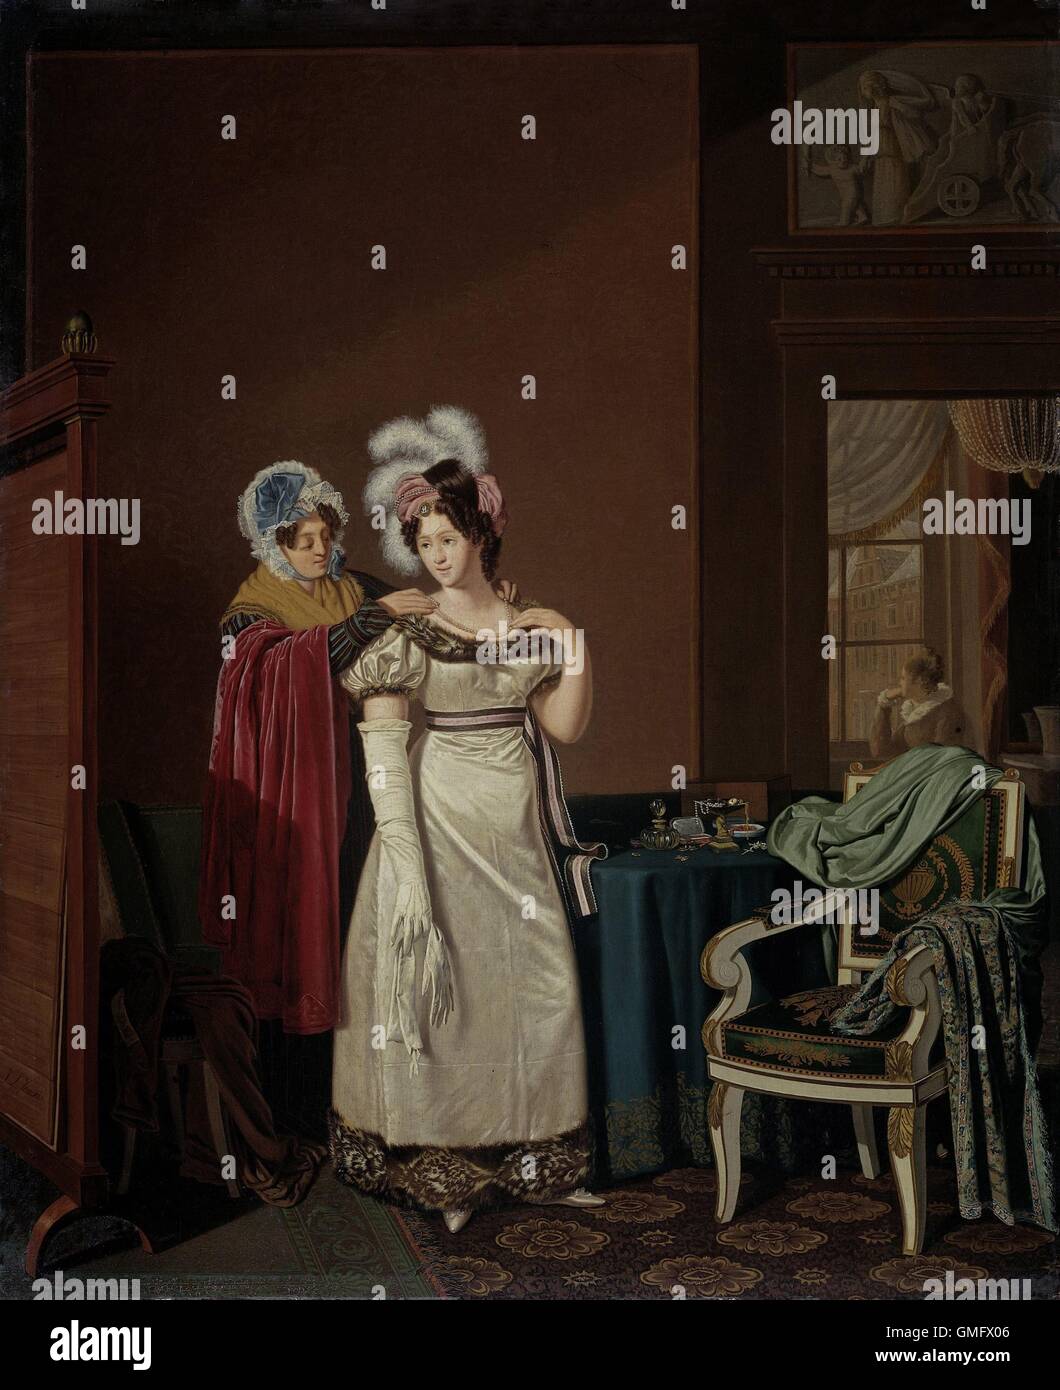 Il wc, da Jan Lodewijk Jonxis, 1830-50, pittura olandese, olio su pannello. Interno in cui una donna medicazione di fronte ad uno specchio con l assistenza di un servo. Sulla destra un'altra donna guarda fuori della finestra (BSLOC 2016 2 117) Foto Stock